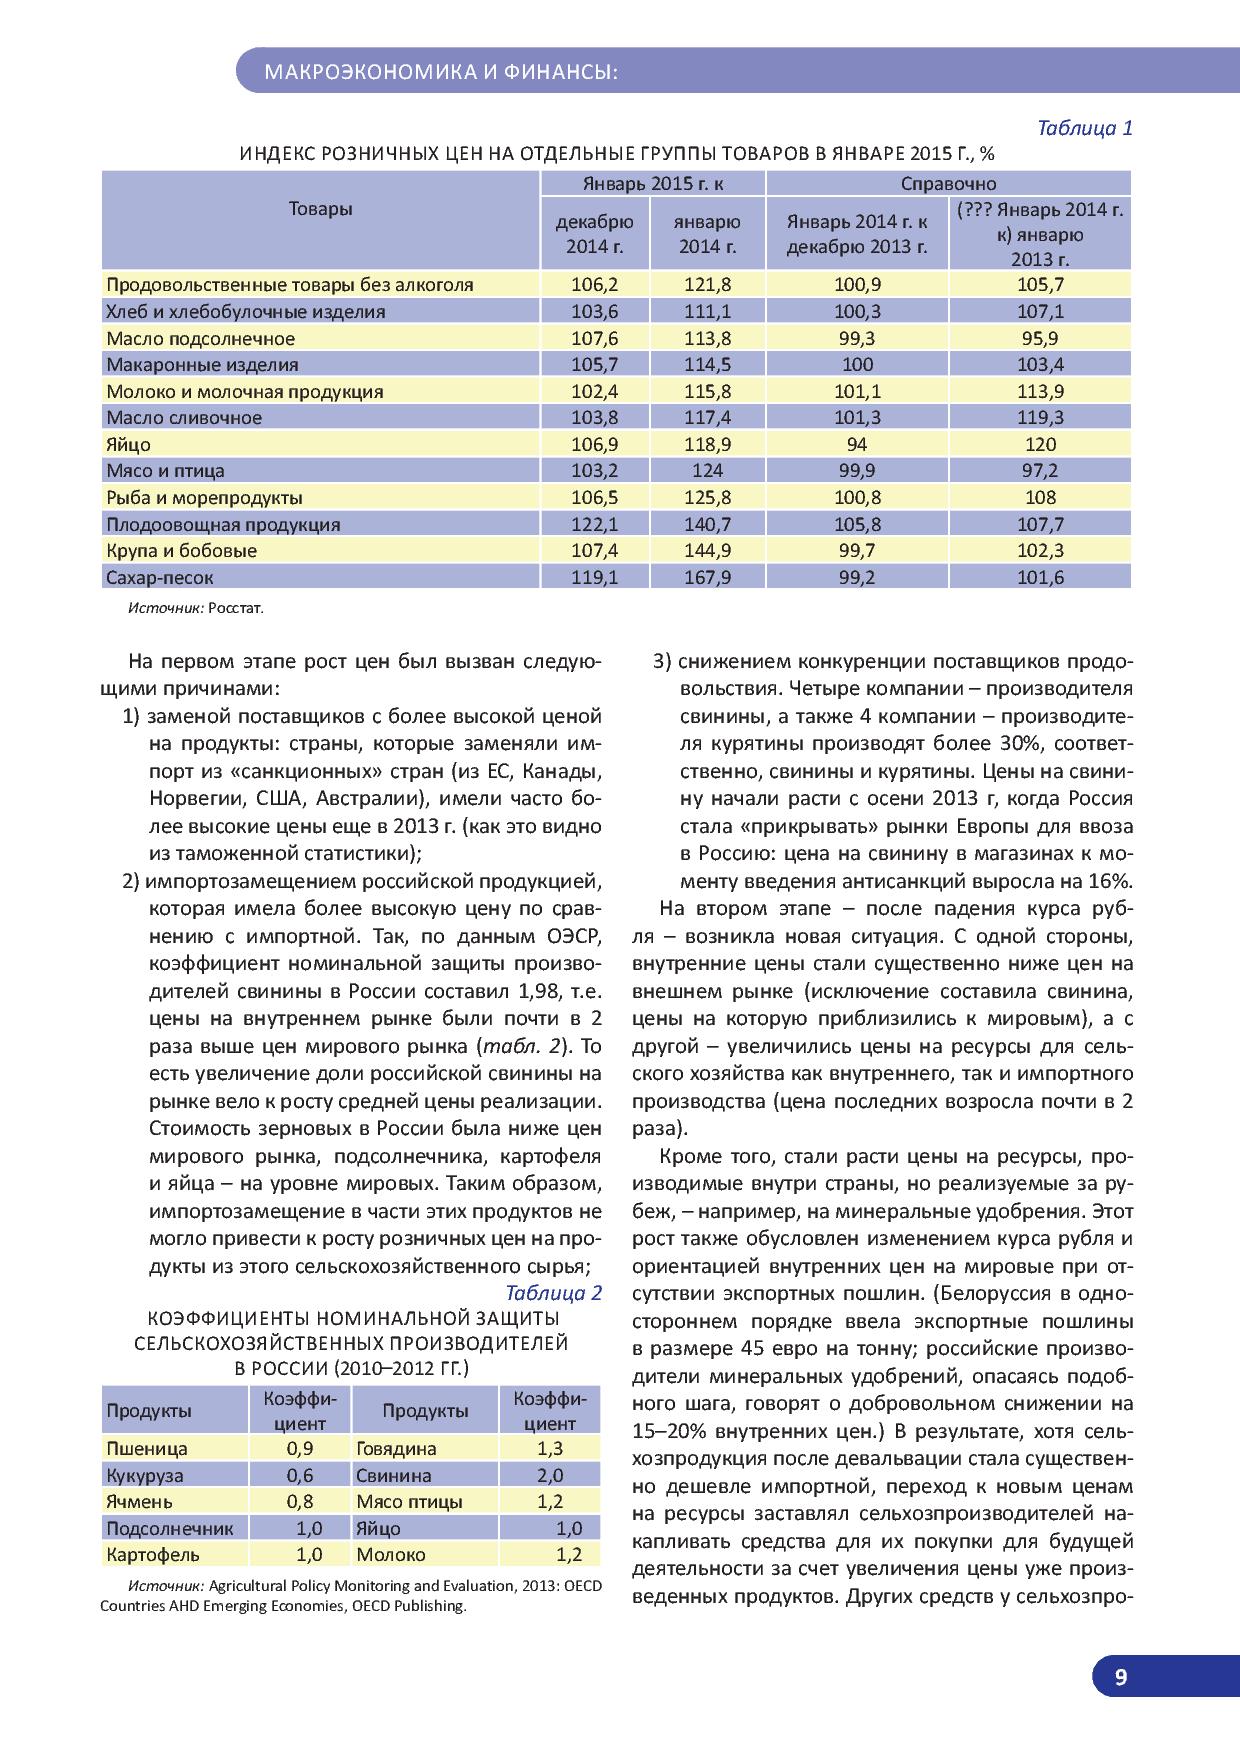   Оперативный мониторинг экономической ситуации в России. Тенденции и вызовы социально-экономического развития  - фото 10